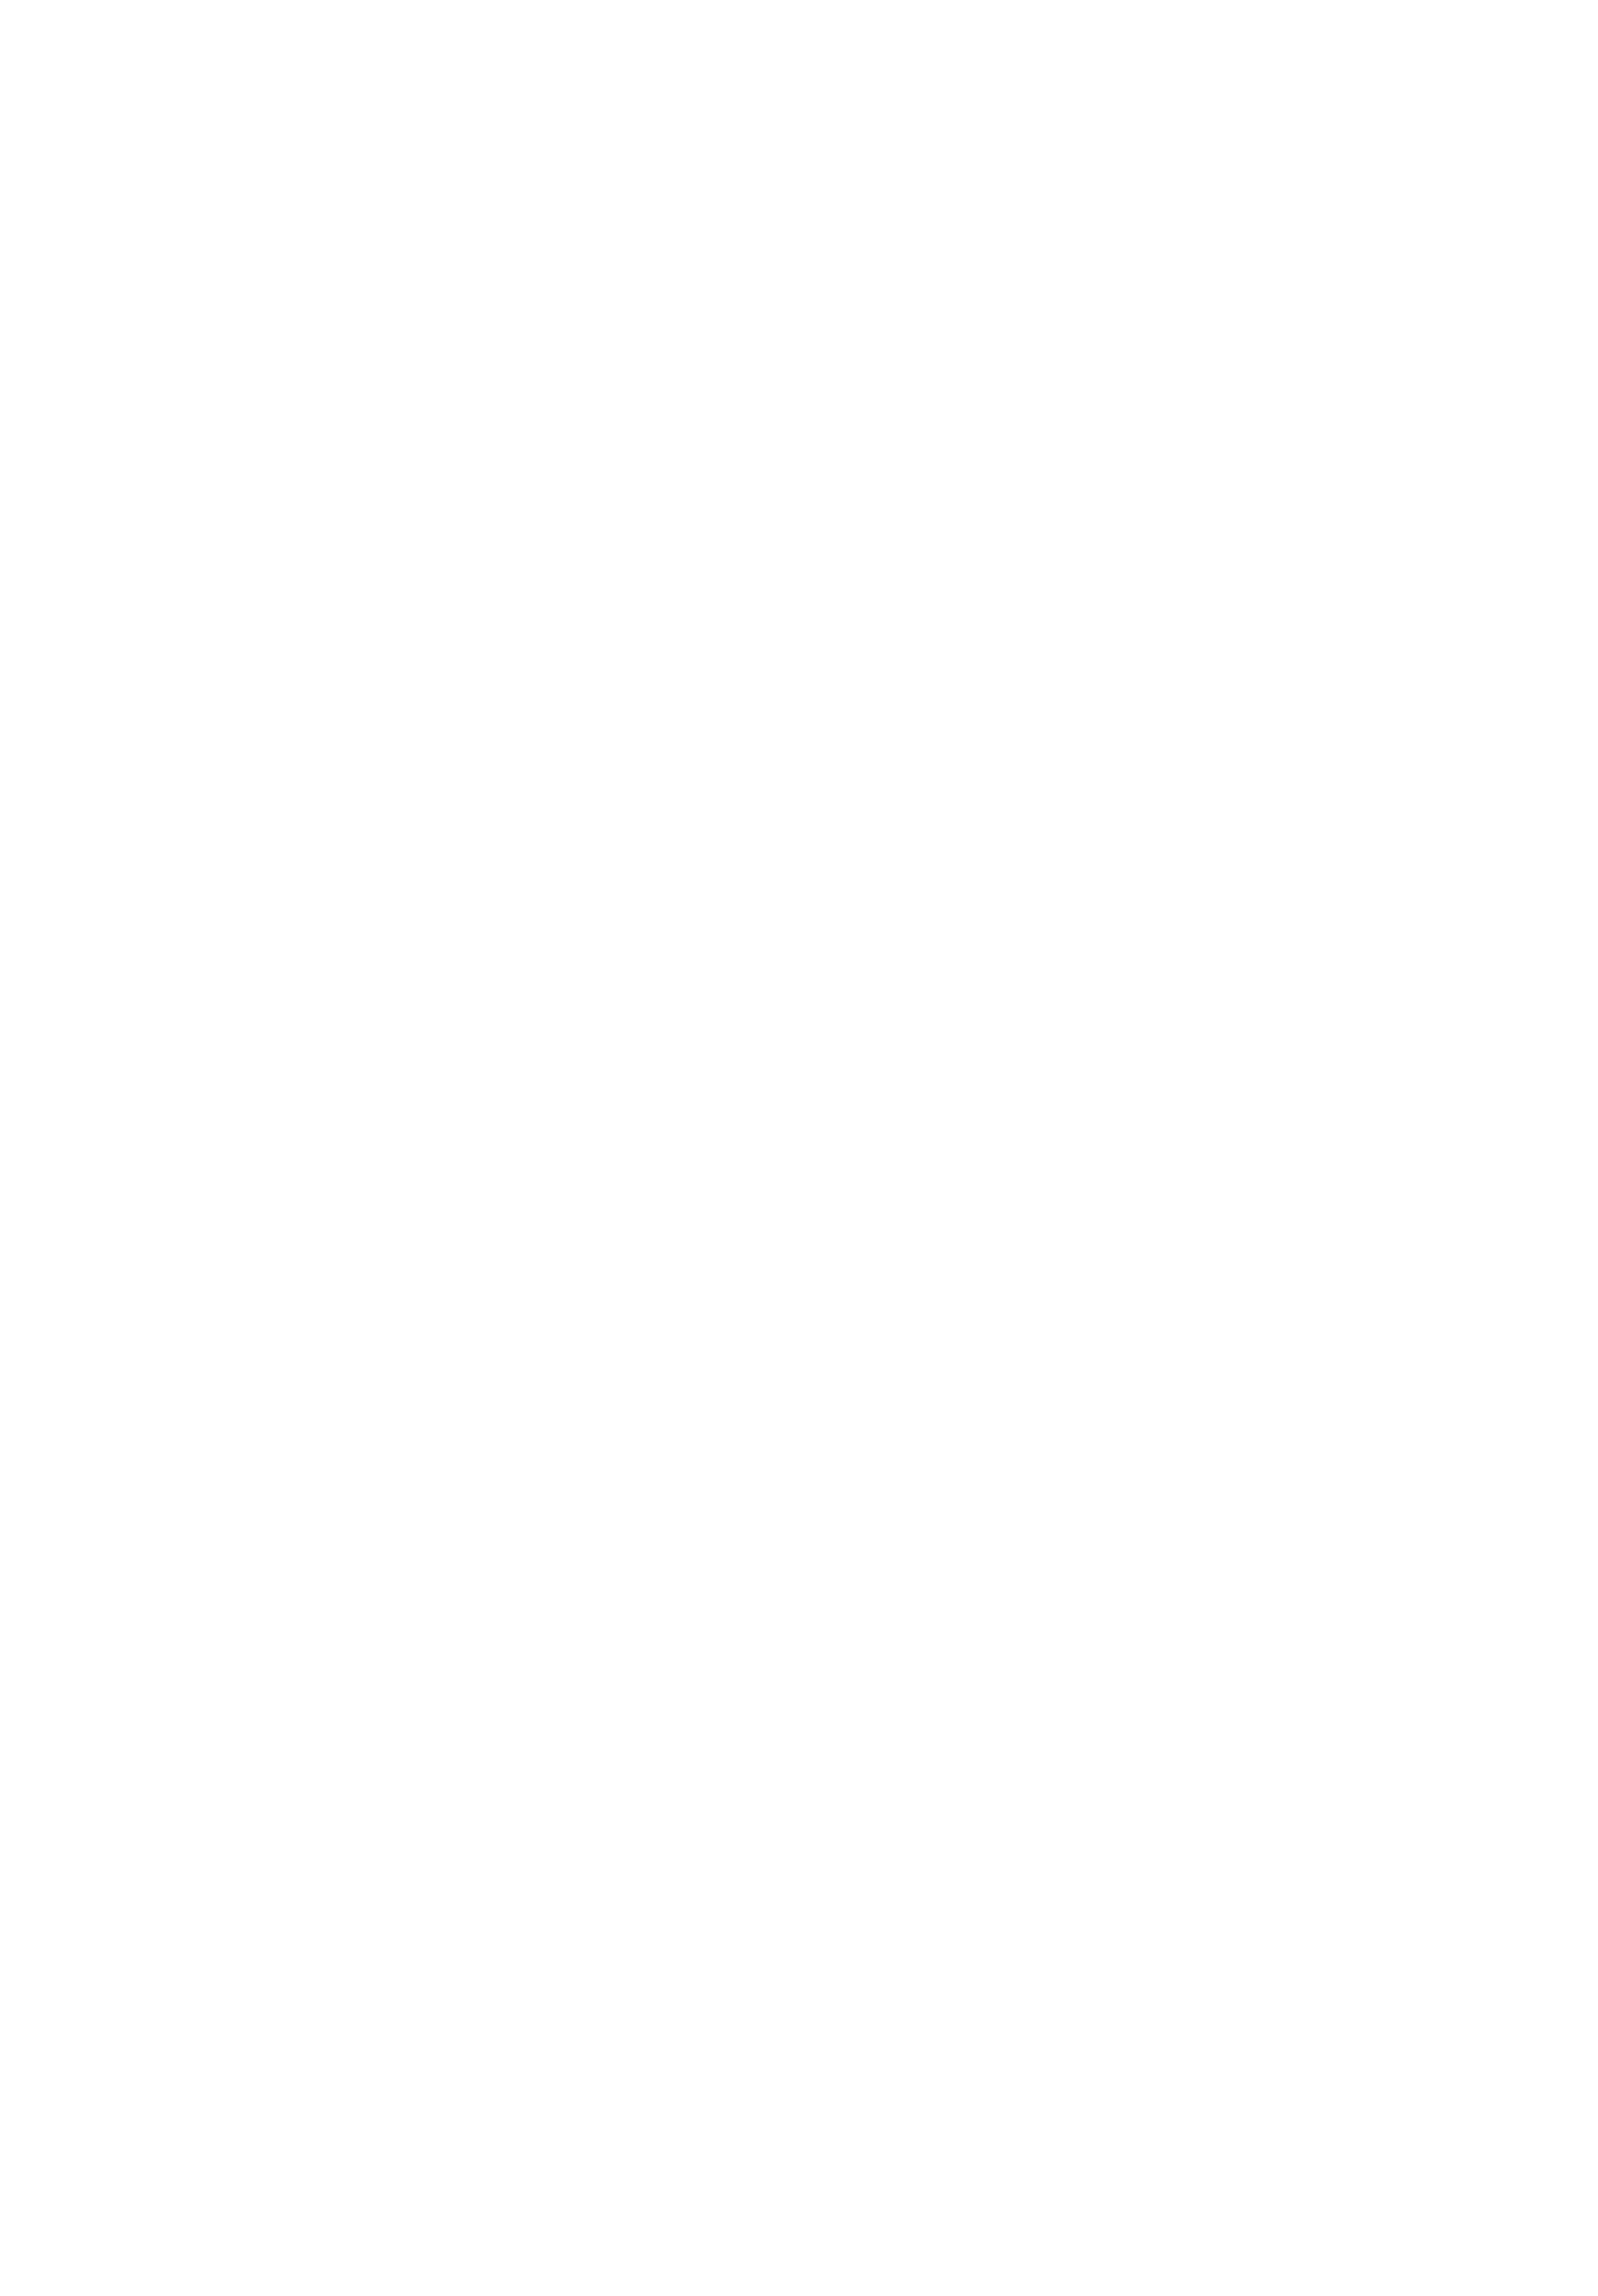 LOGO SIMÓN Y CASILDA lineas blancas